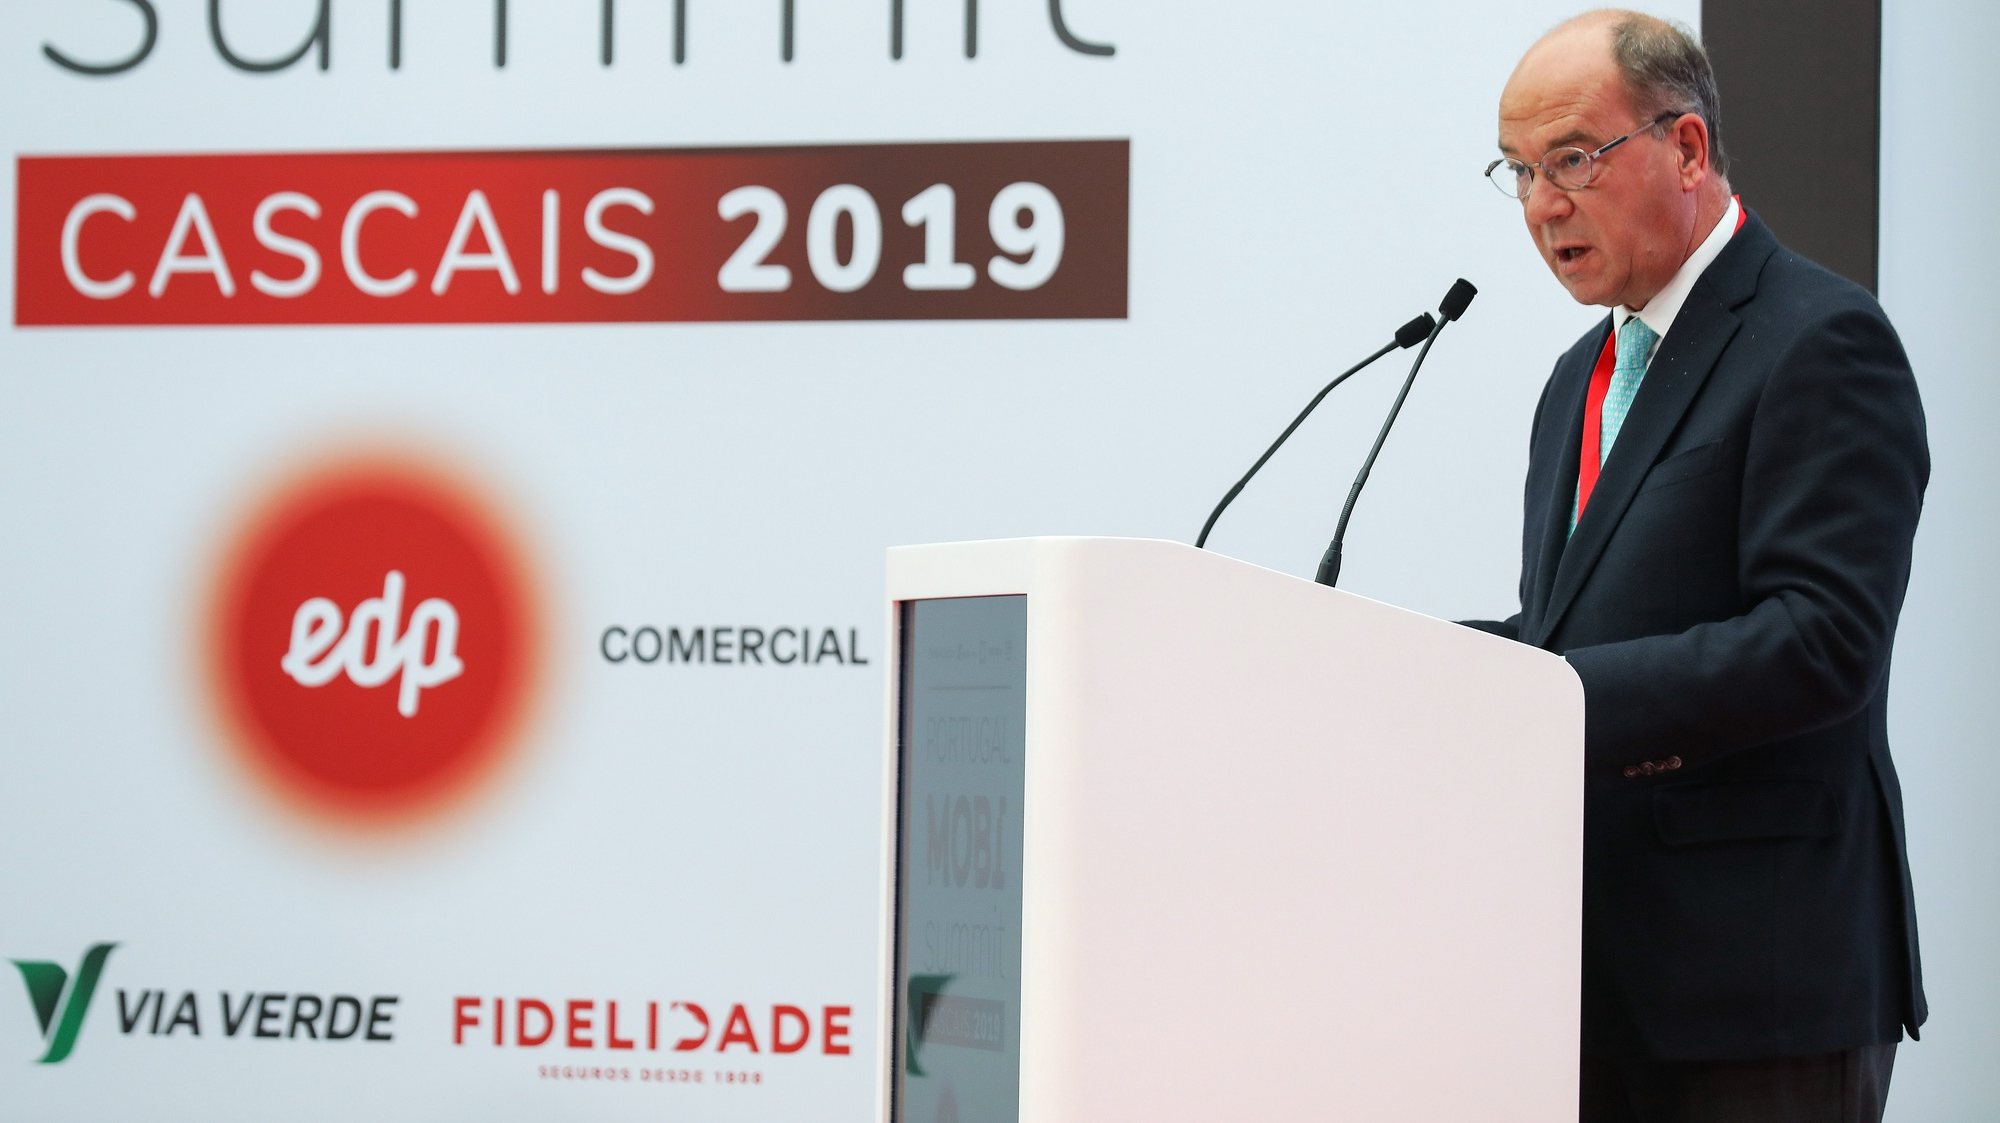 O presidente da Câmara Municipal de Cascais, Carlos Carreiras, discursa na 2.ª Edição da Portugal Mobi Summit, a decorrer na Universidade Nova SBE, em Carcavelos, 24 de outubro 2019. MIGUEL A. LOPES/LUSA